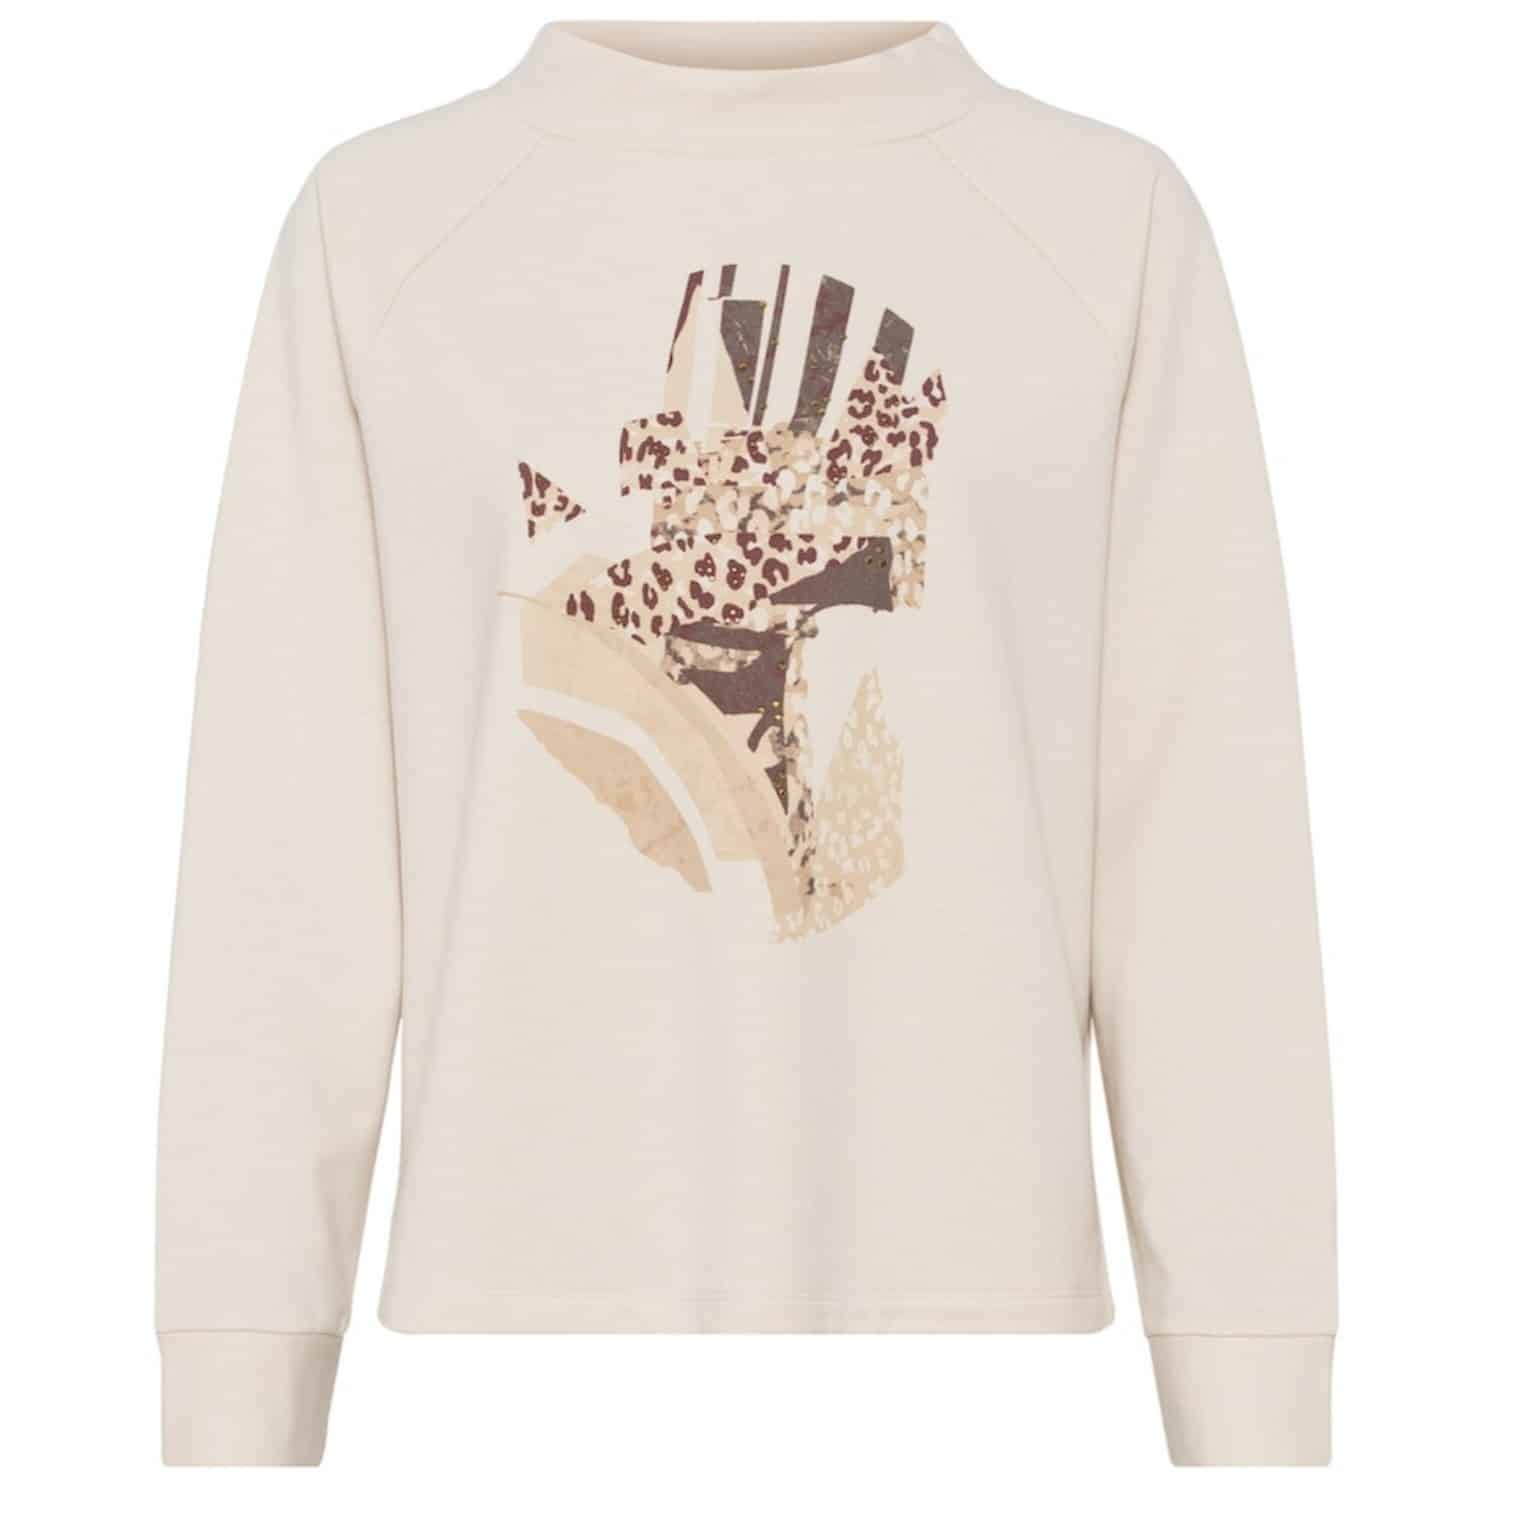 Sweatshirt mit Frontprint in hellen beigetönen von Olsen Artikel 11201532 bei Mode Sabine Lemke in Winnenden bei Stuttgart oder im Onlineshop einkaufen